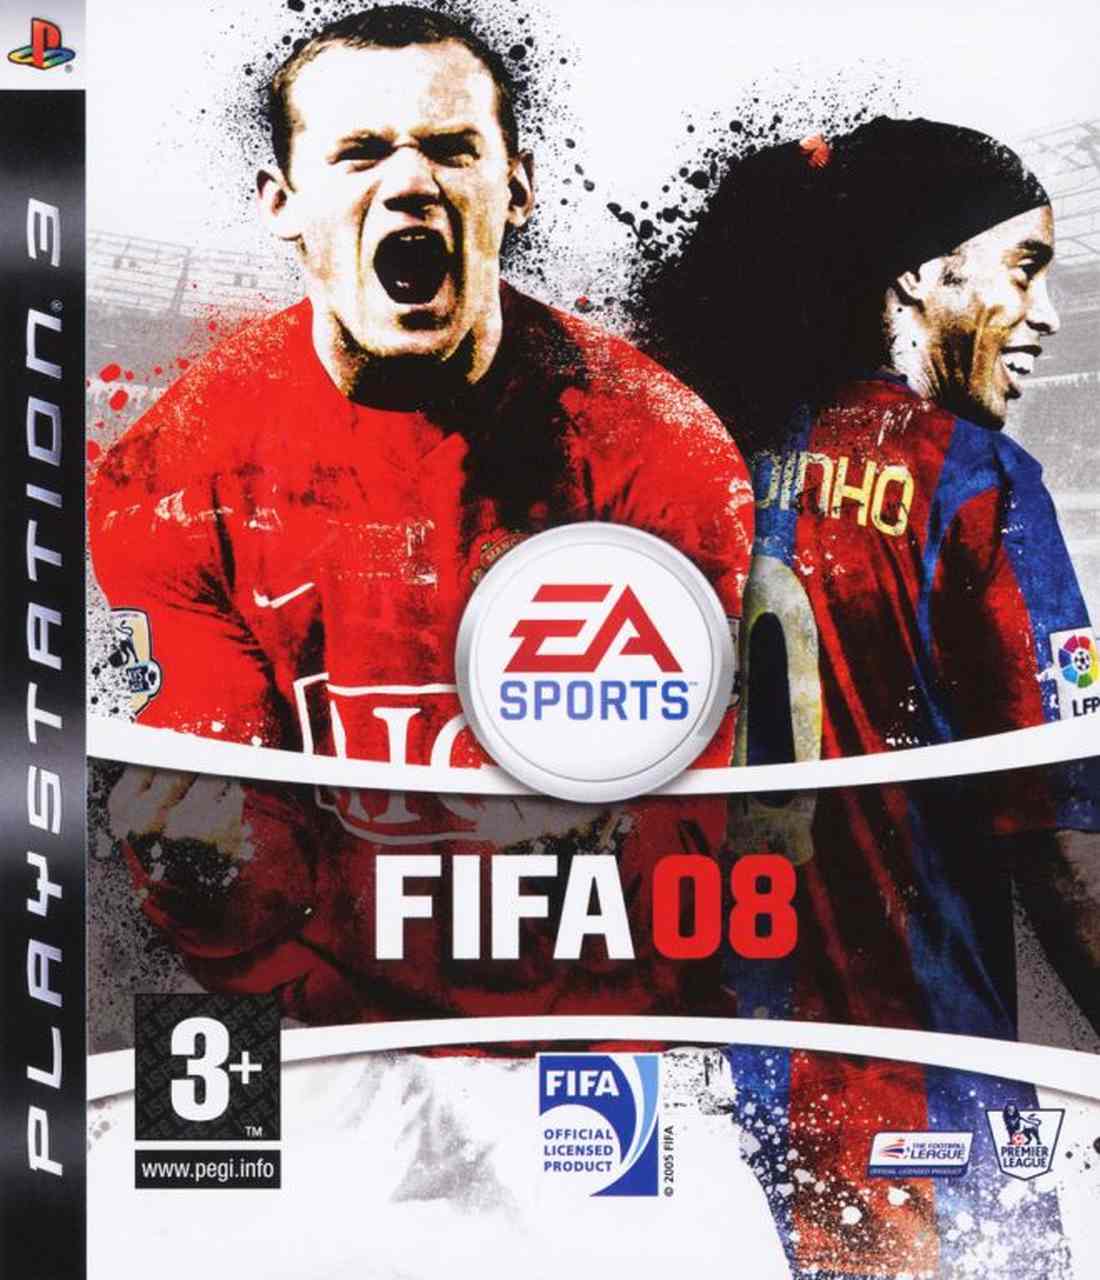 FIFA 08 - Pelo terceiro ano consecutivo, Ronaldinho Gaúcho e Wayne Rooney dividiam a capa global de FIFA.